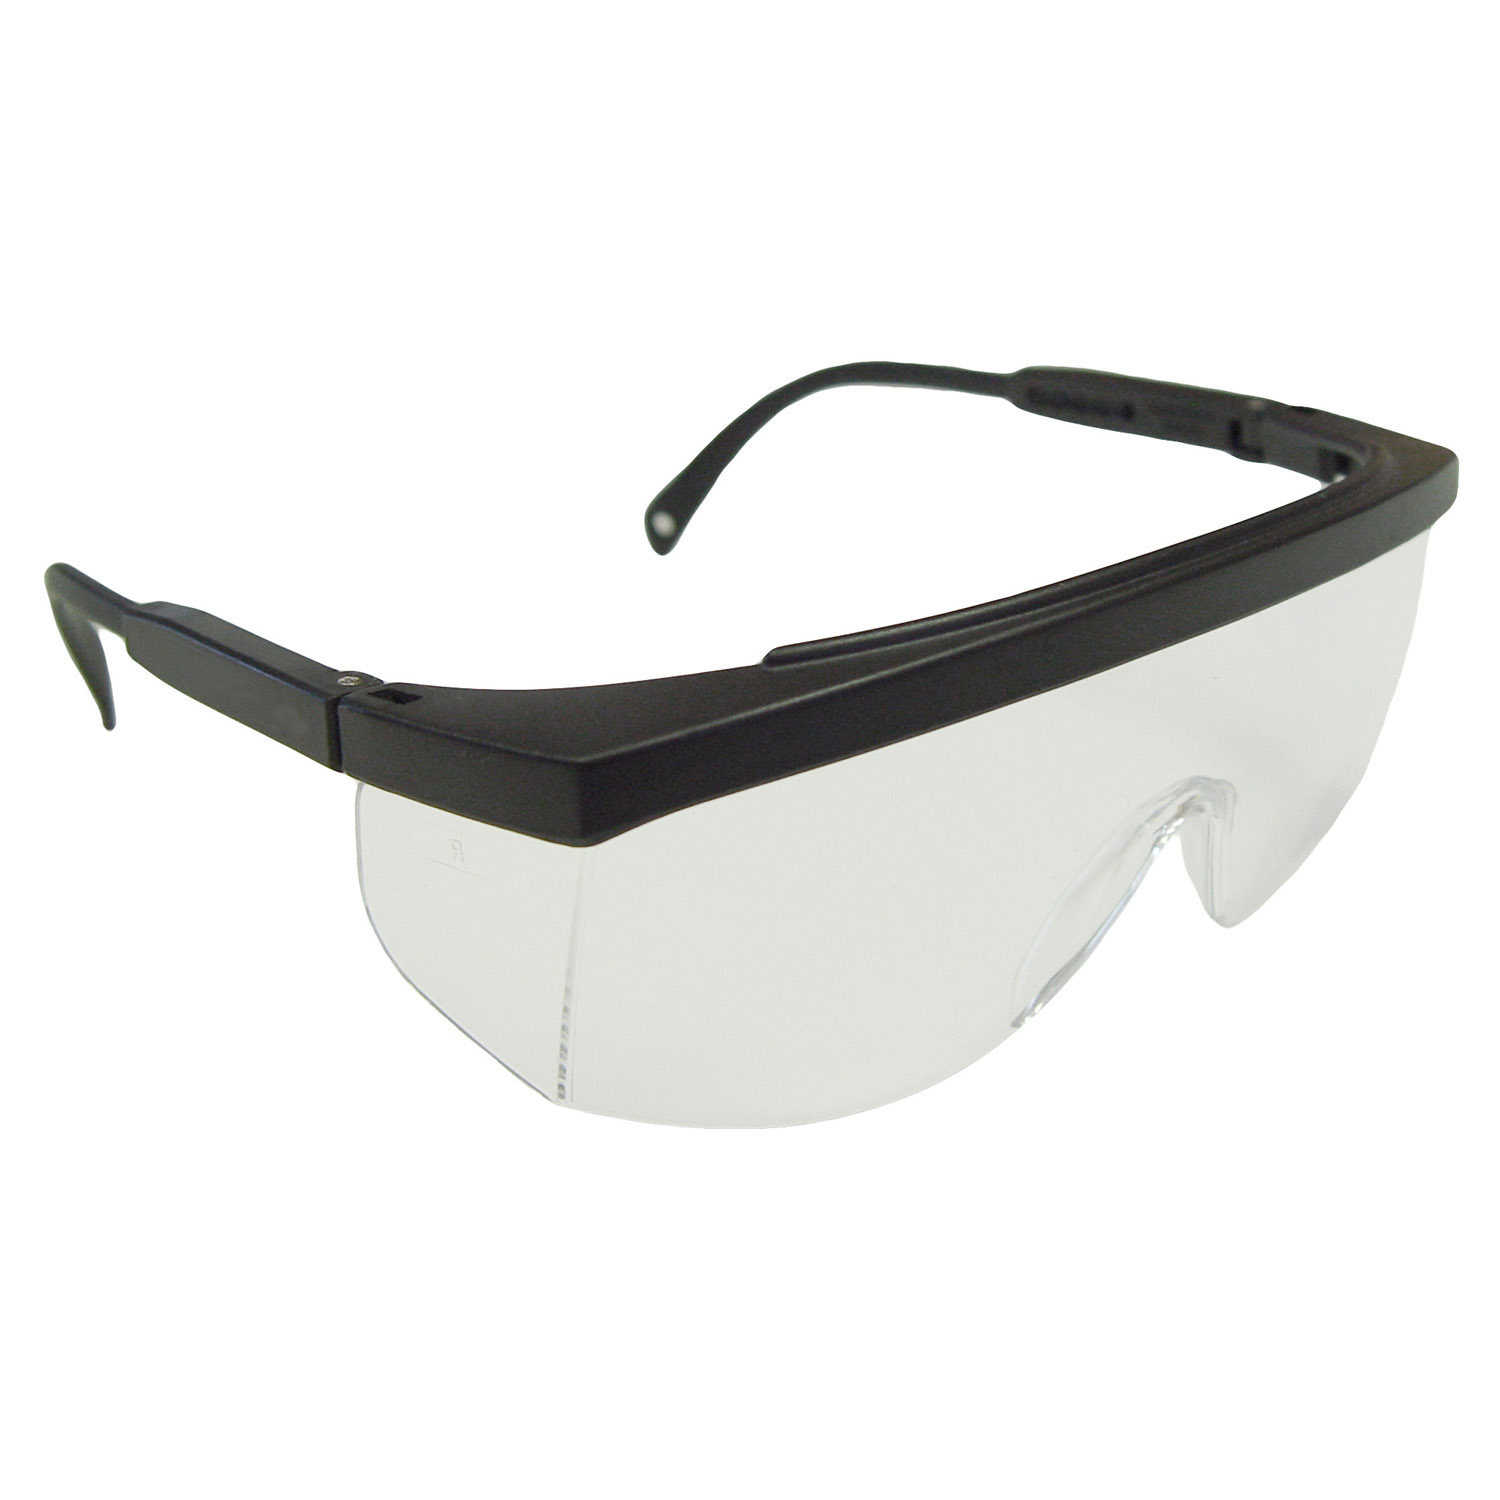 Galaxy™ Safety Eyewear - Black Frame - Clear Lens - Clear Lens